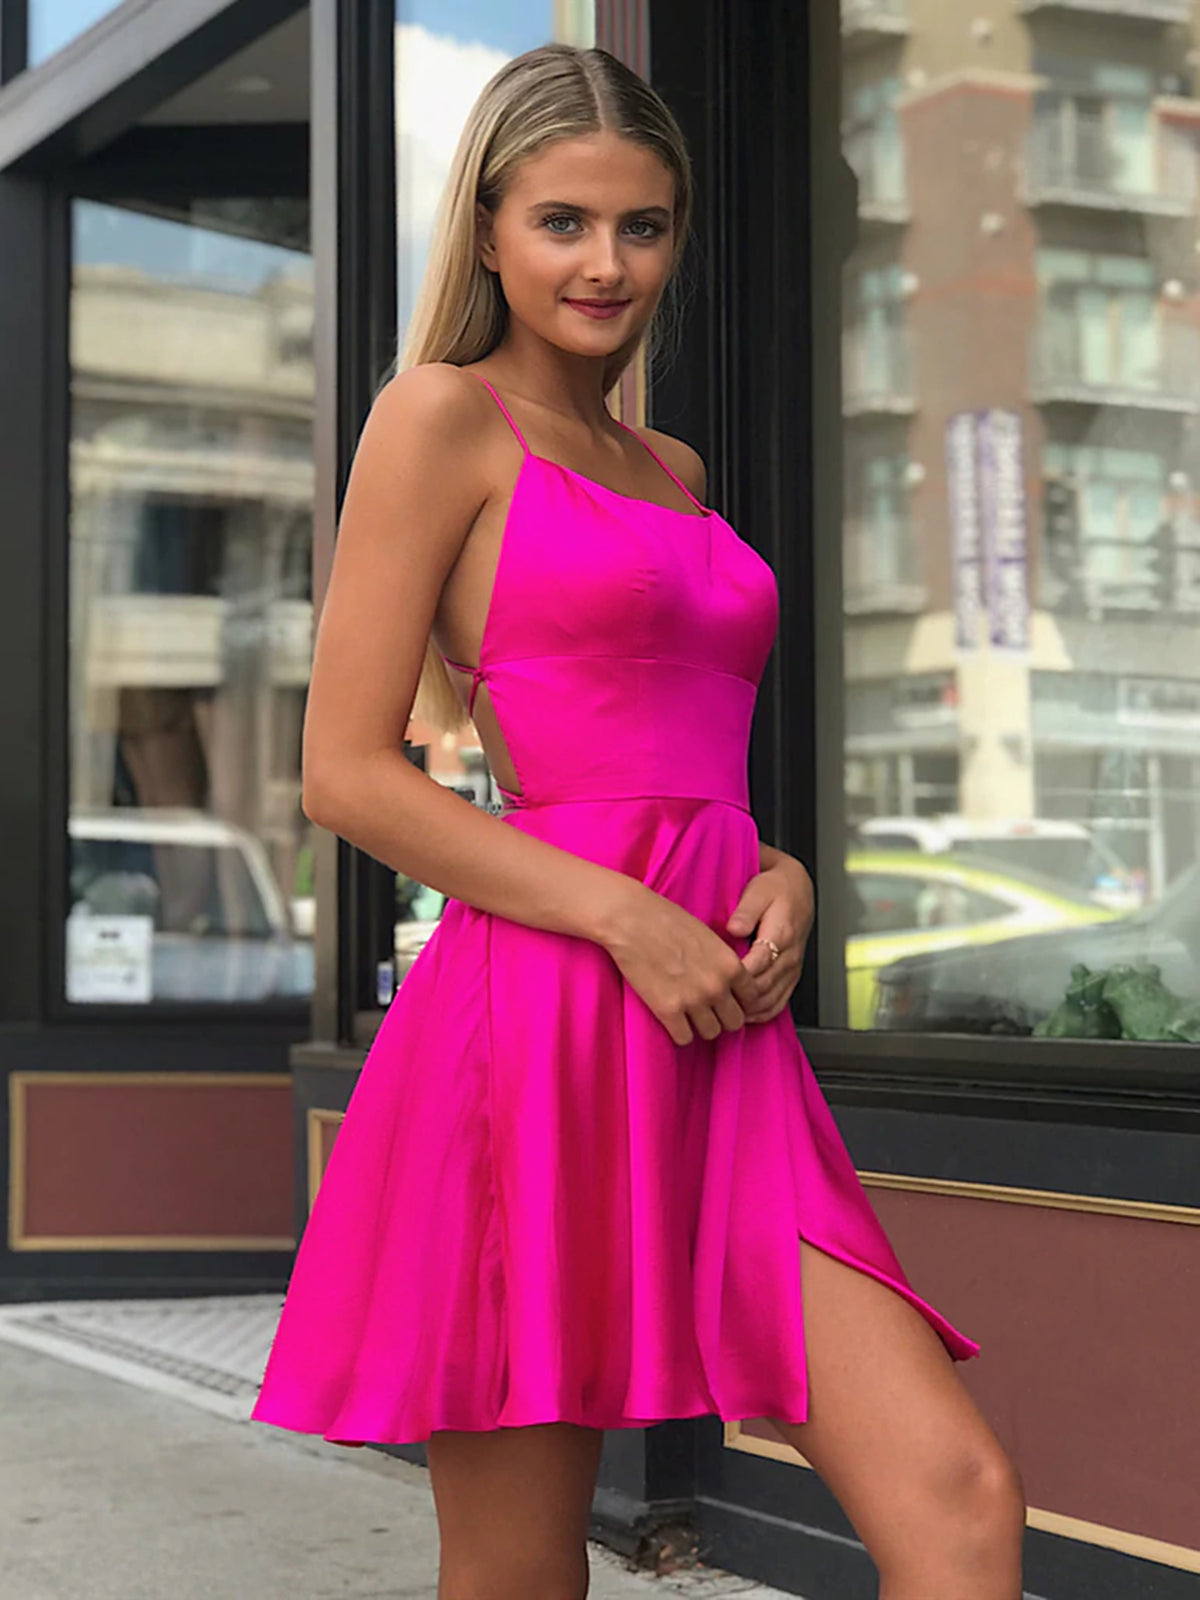 hot pink formal dresses